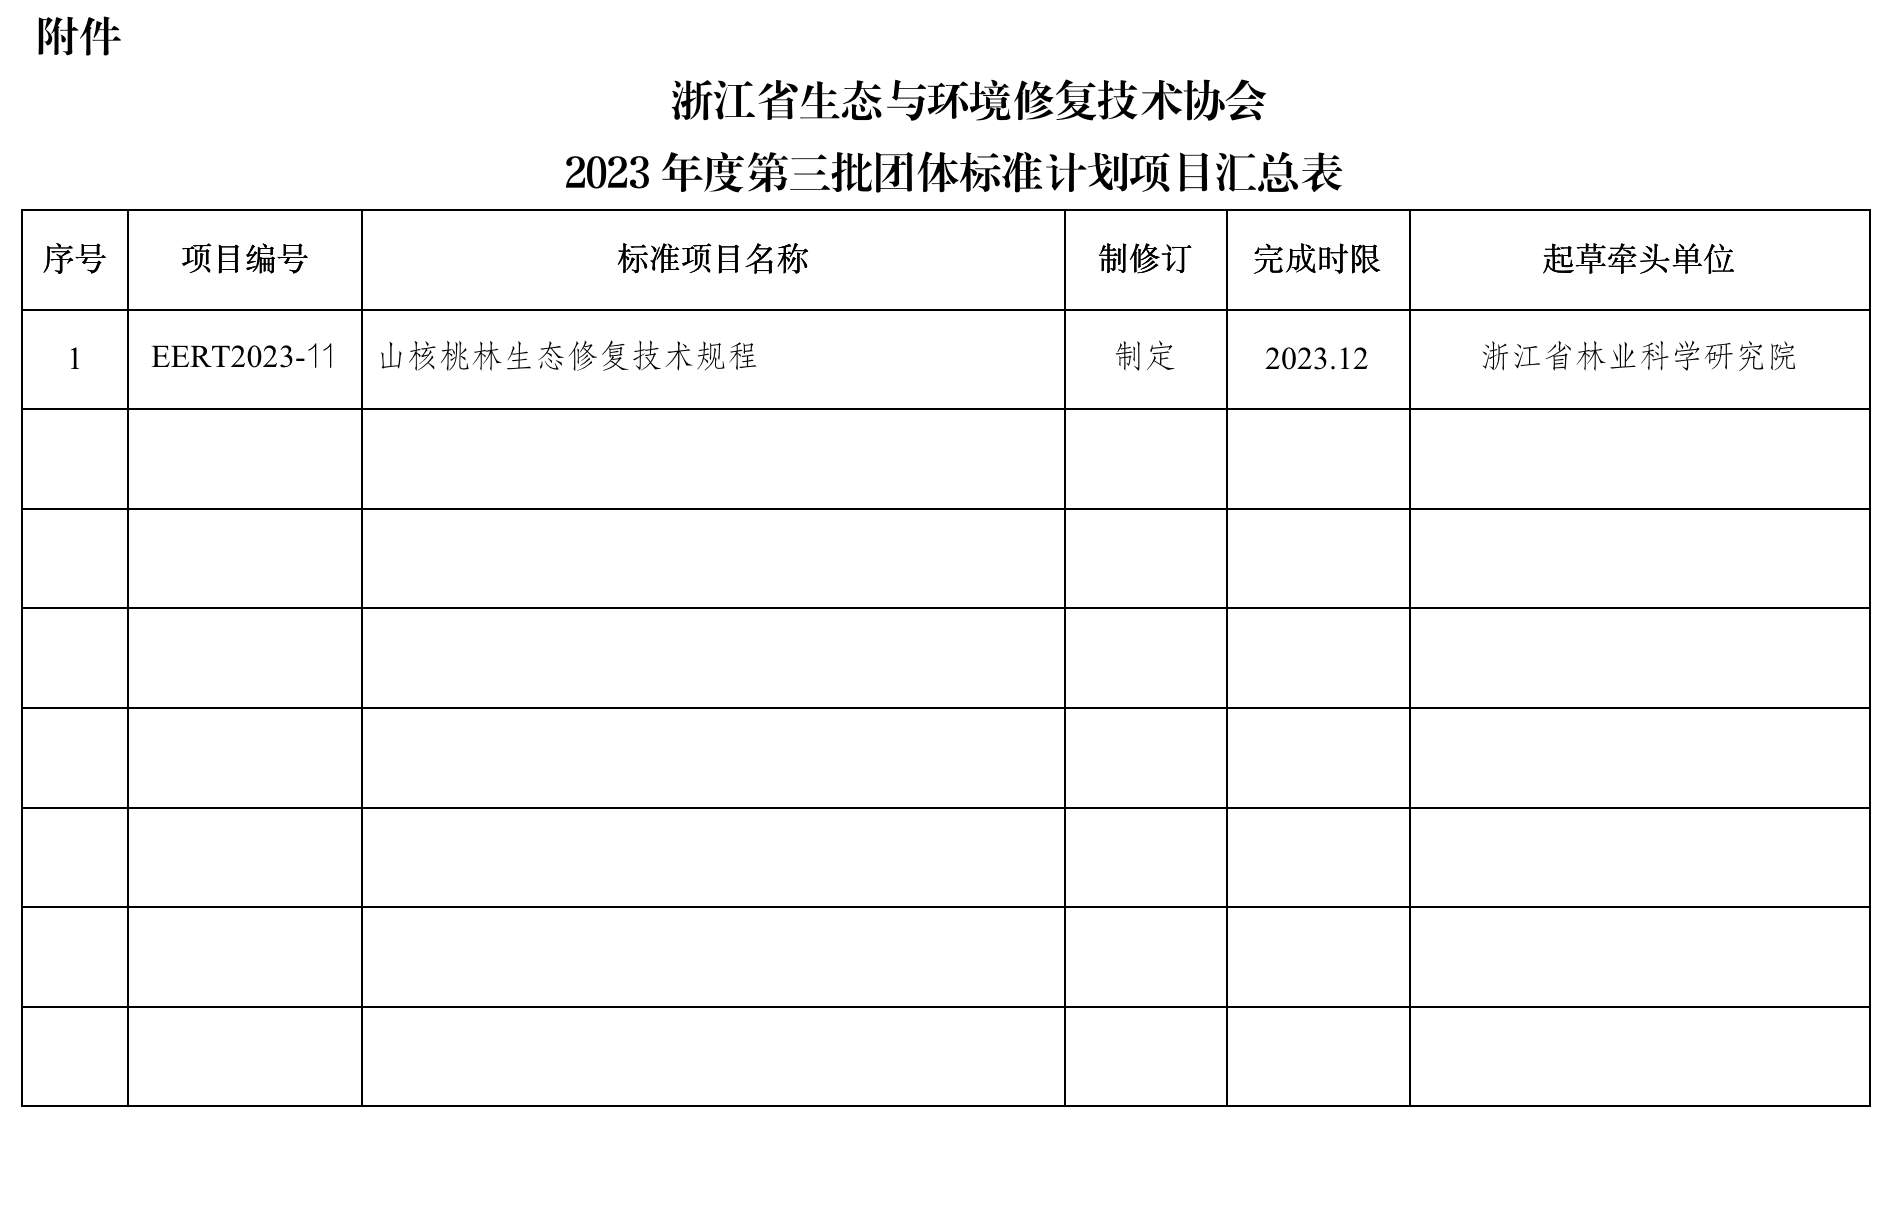 关于浙江省生态与环境修复技术协会2023年第三批团体标准制定计划的通知--勘误版0725_03.png